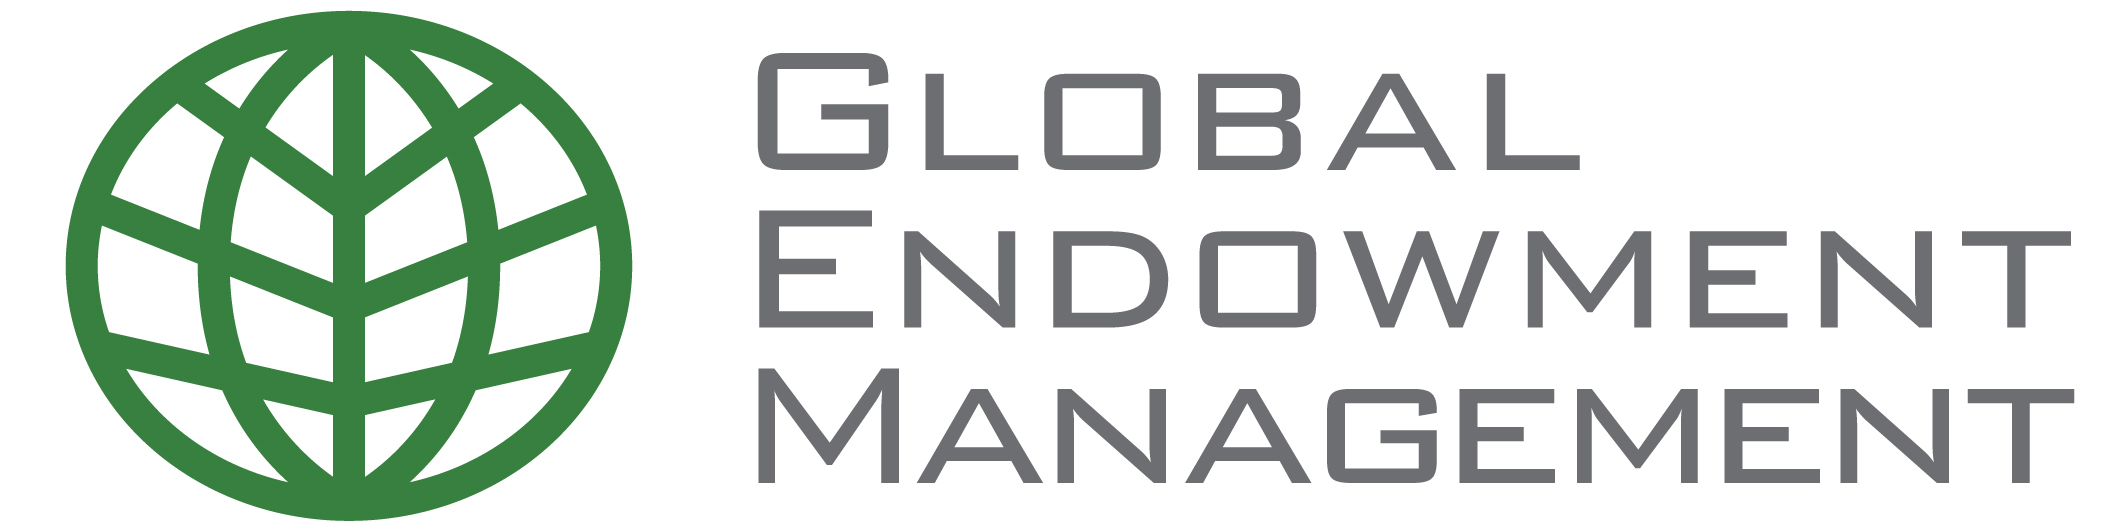 Global Endowmnet Management logo